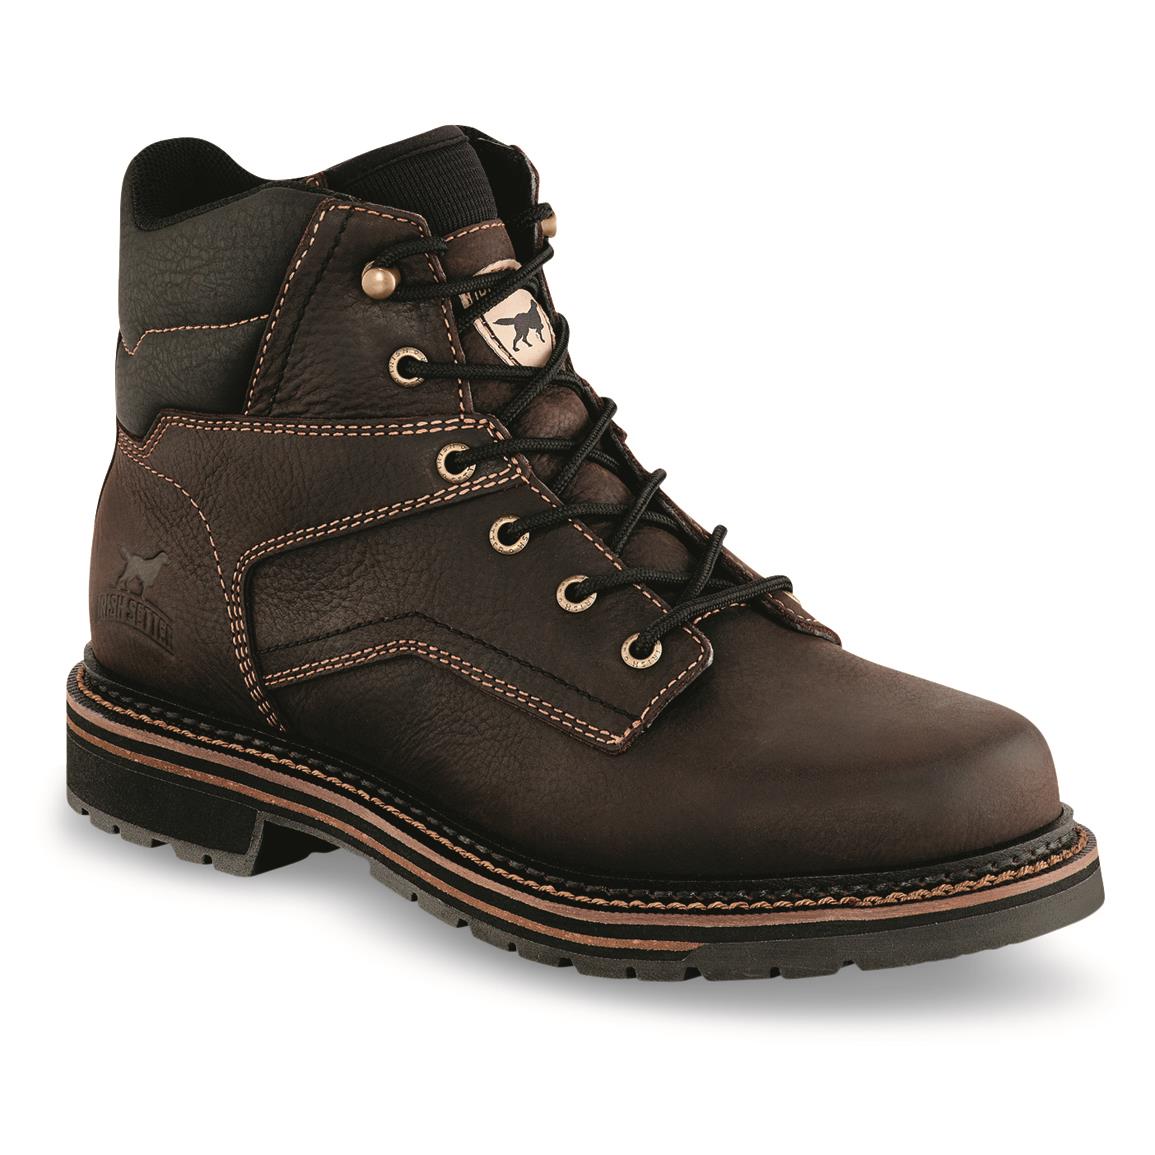 Irish Setter Men's Kittson 6" Steel Toe Work Boots, Brown